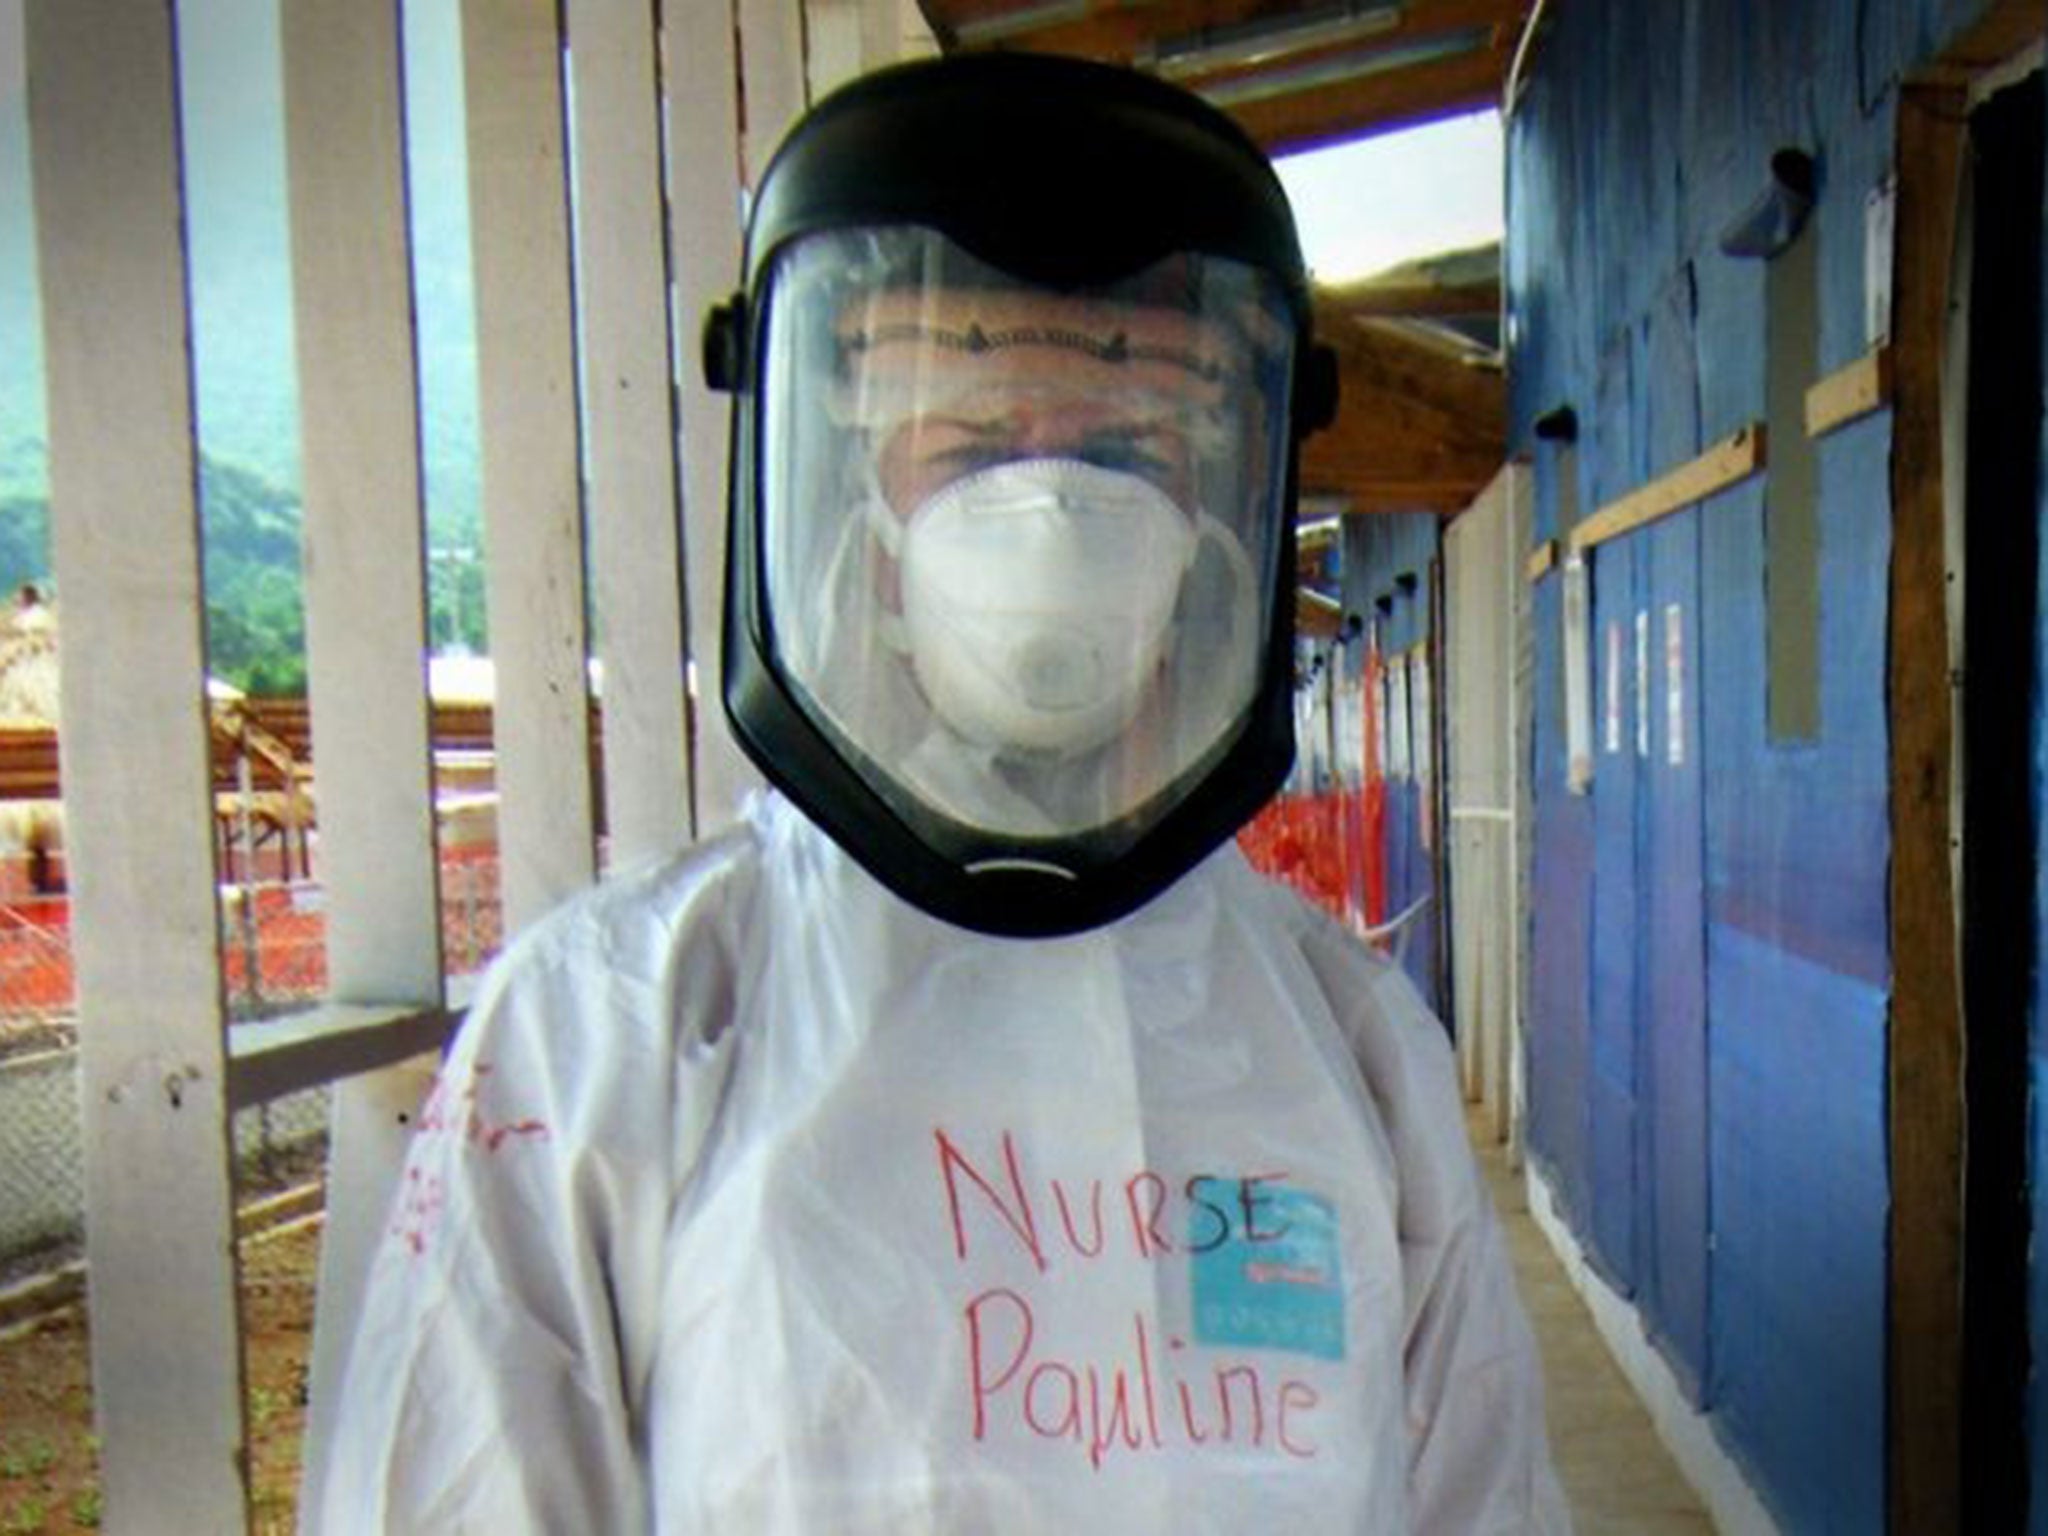 Pauline Cafferkey worked with Ebola patients in Sierra Leone